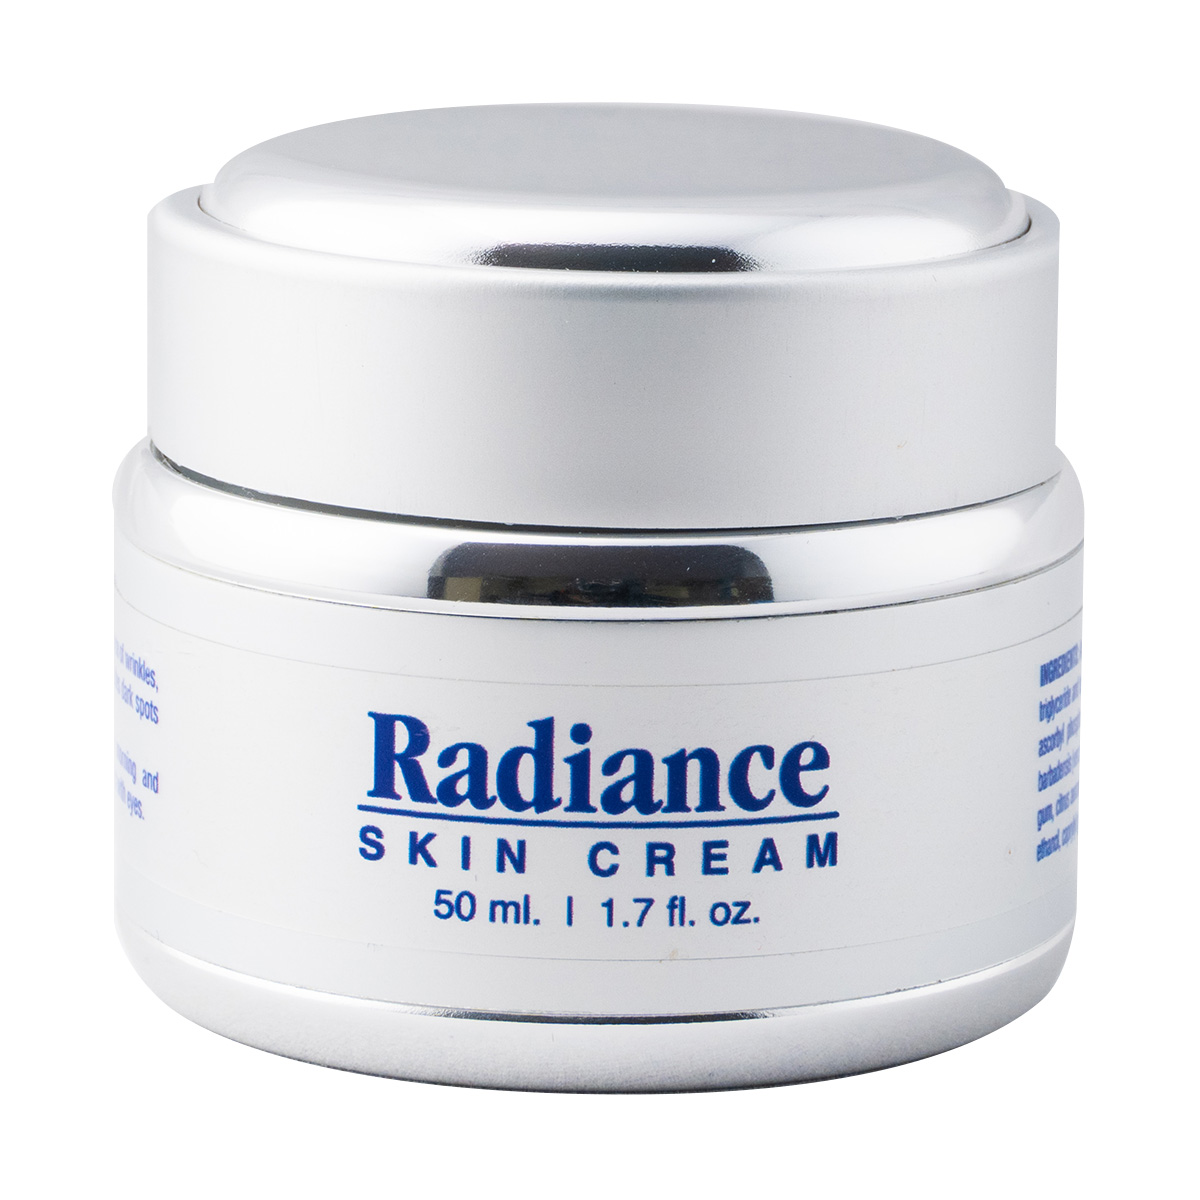 Radiance Cream - Private Label Skin Care